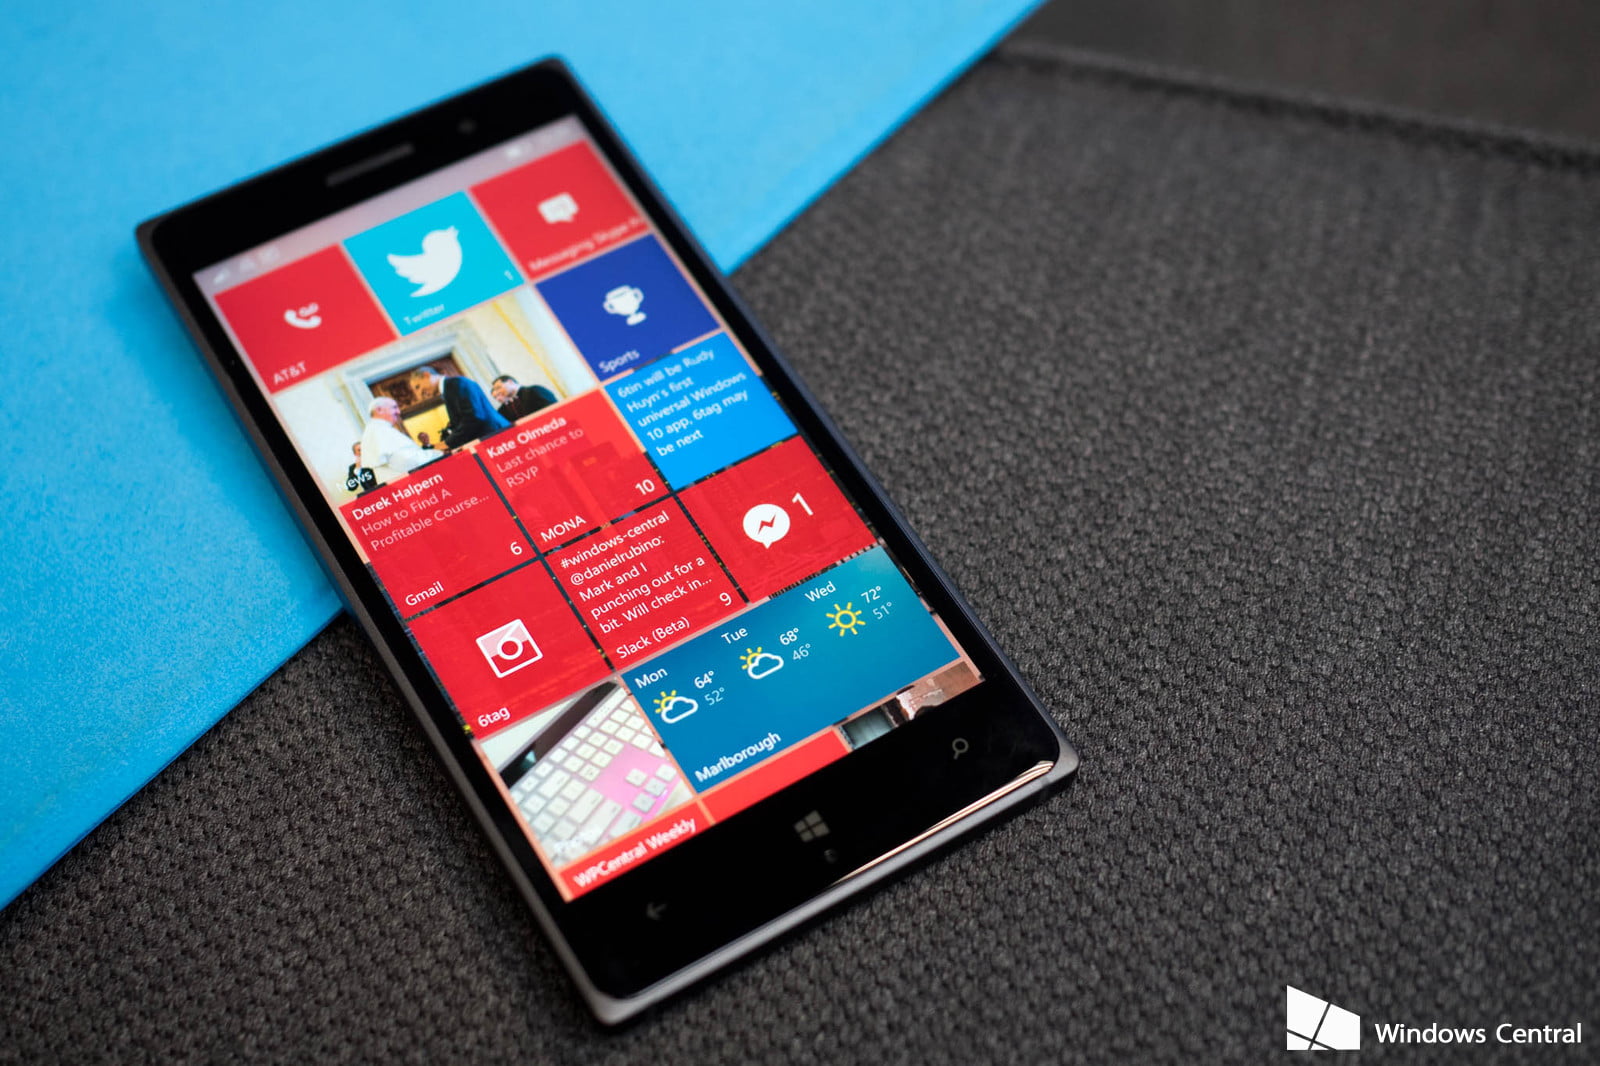 بروز رسانی های Windows Phone 8.1 از فردا متوقف خواهند شد